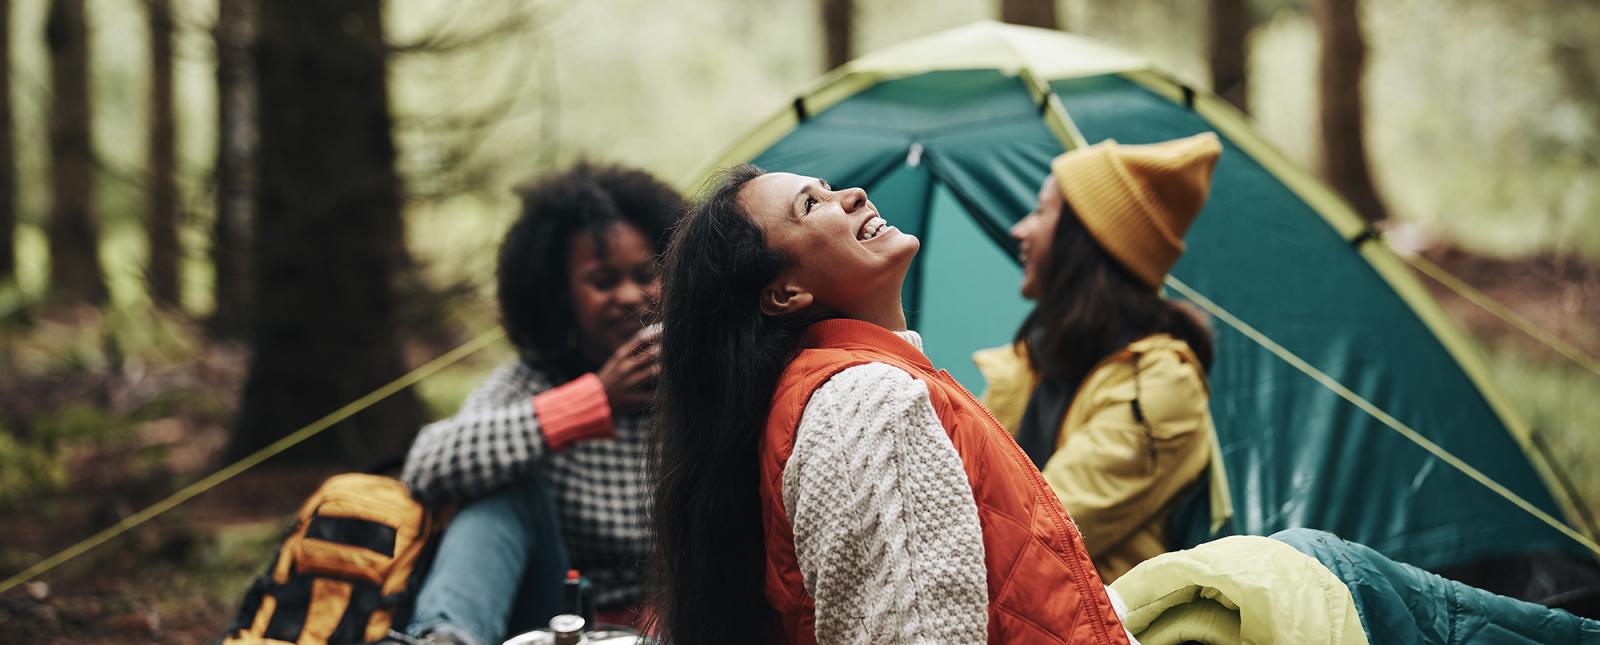 Three women enjoying nature while camping